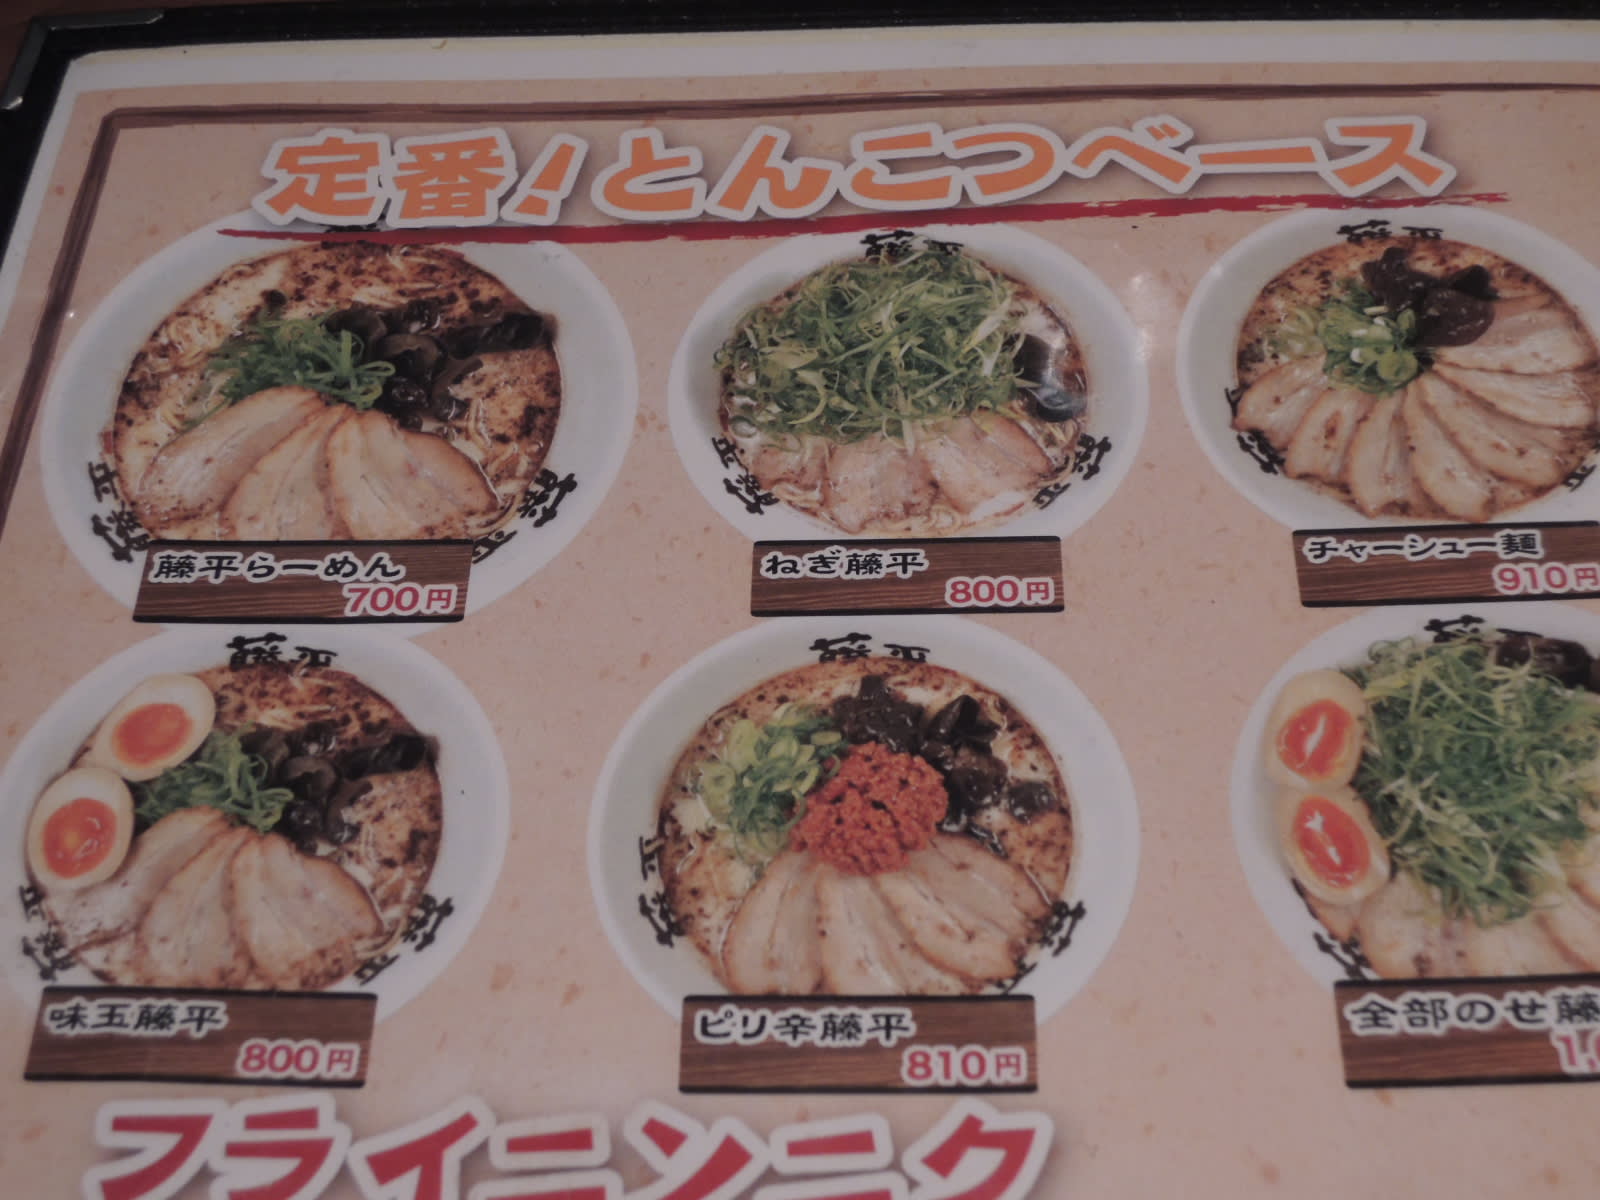 藤平 亀岡店 とうべい 亀岡 ラーメン 食べること大好き